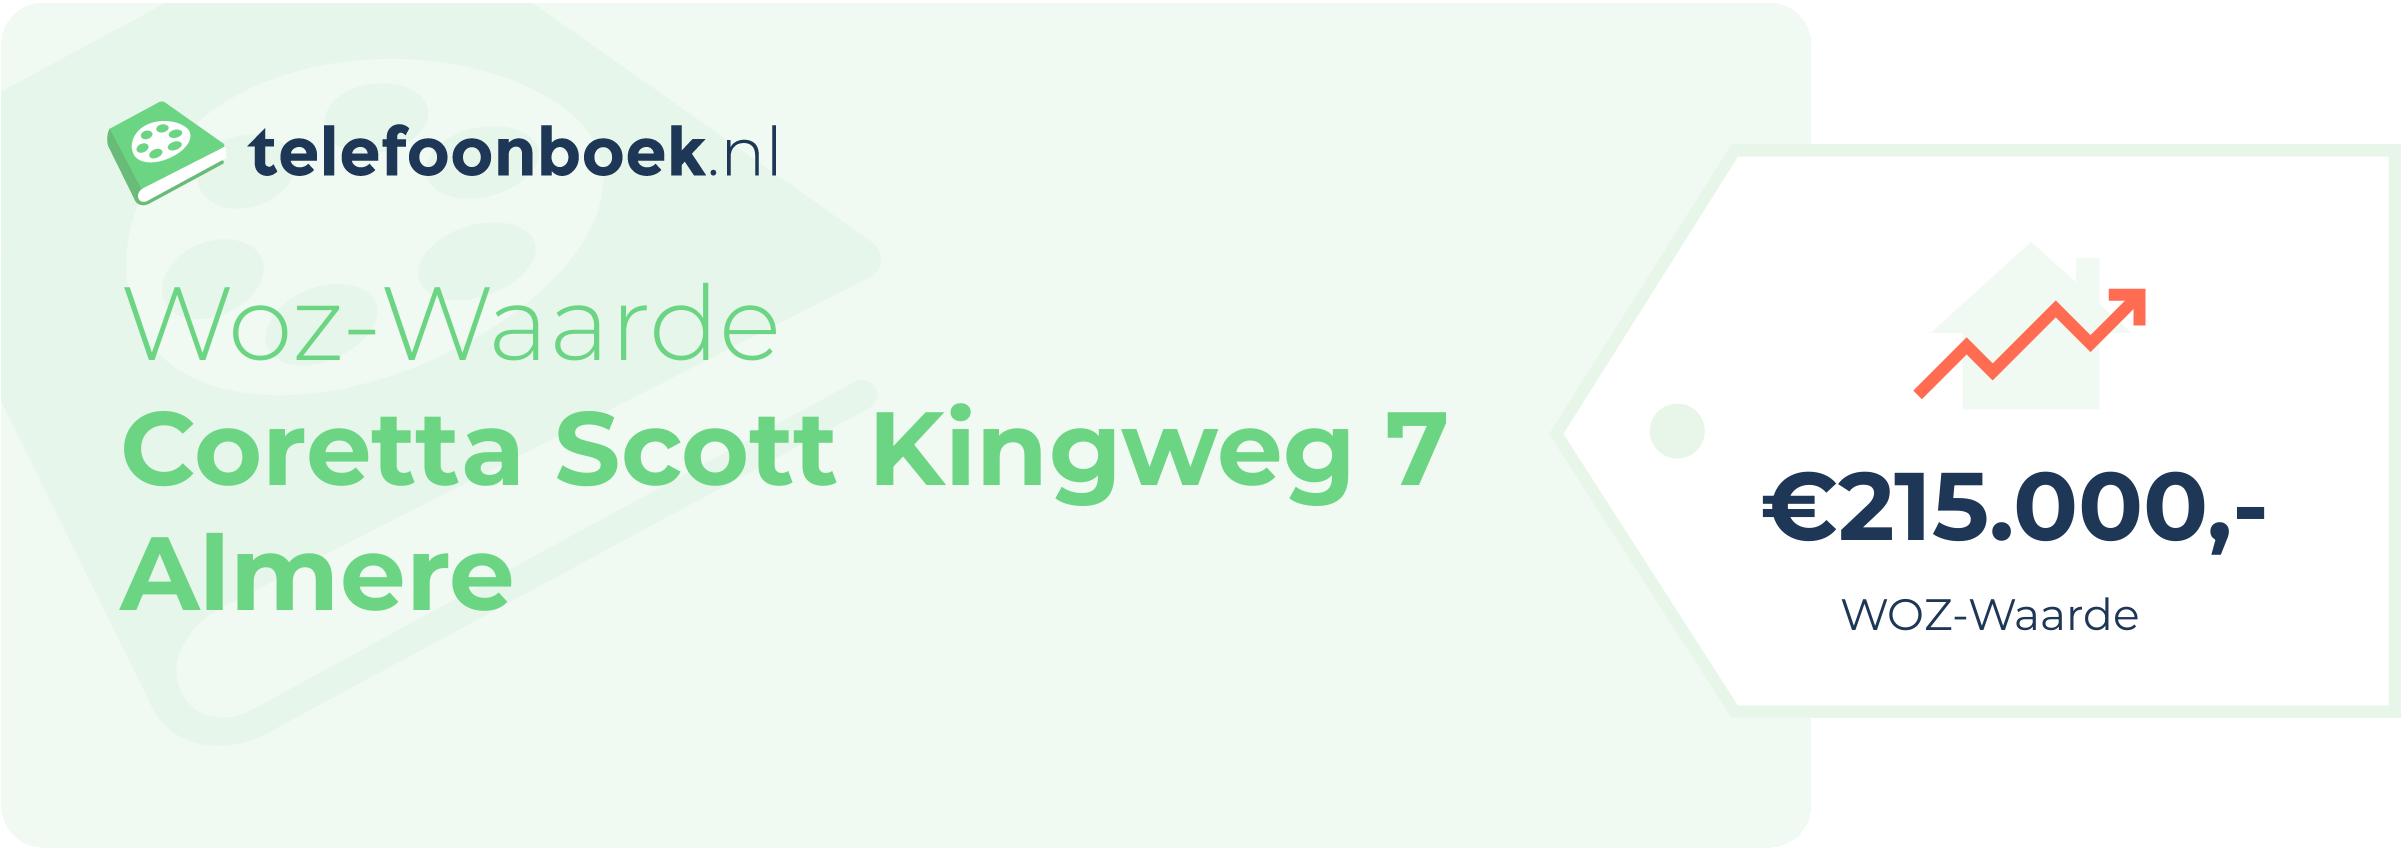 WOZ-waarde Coretta Scott Kingweg 7 Almere